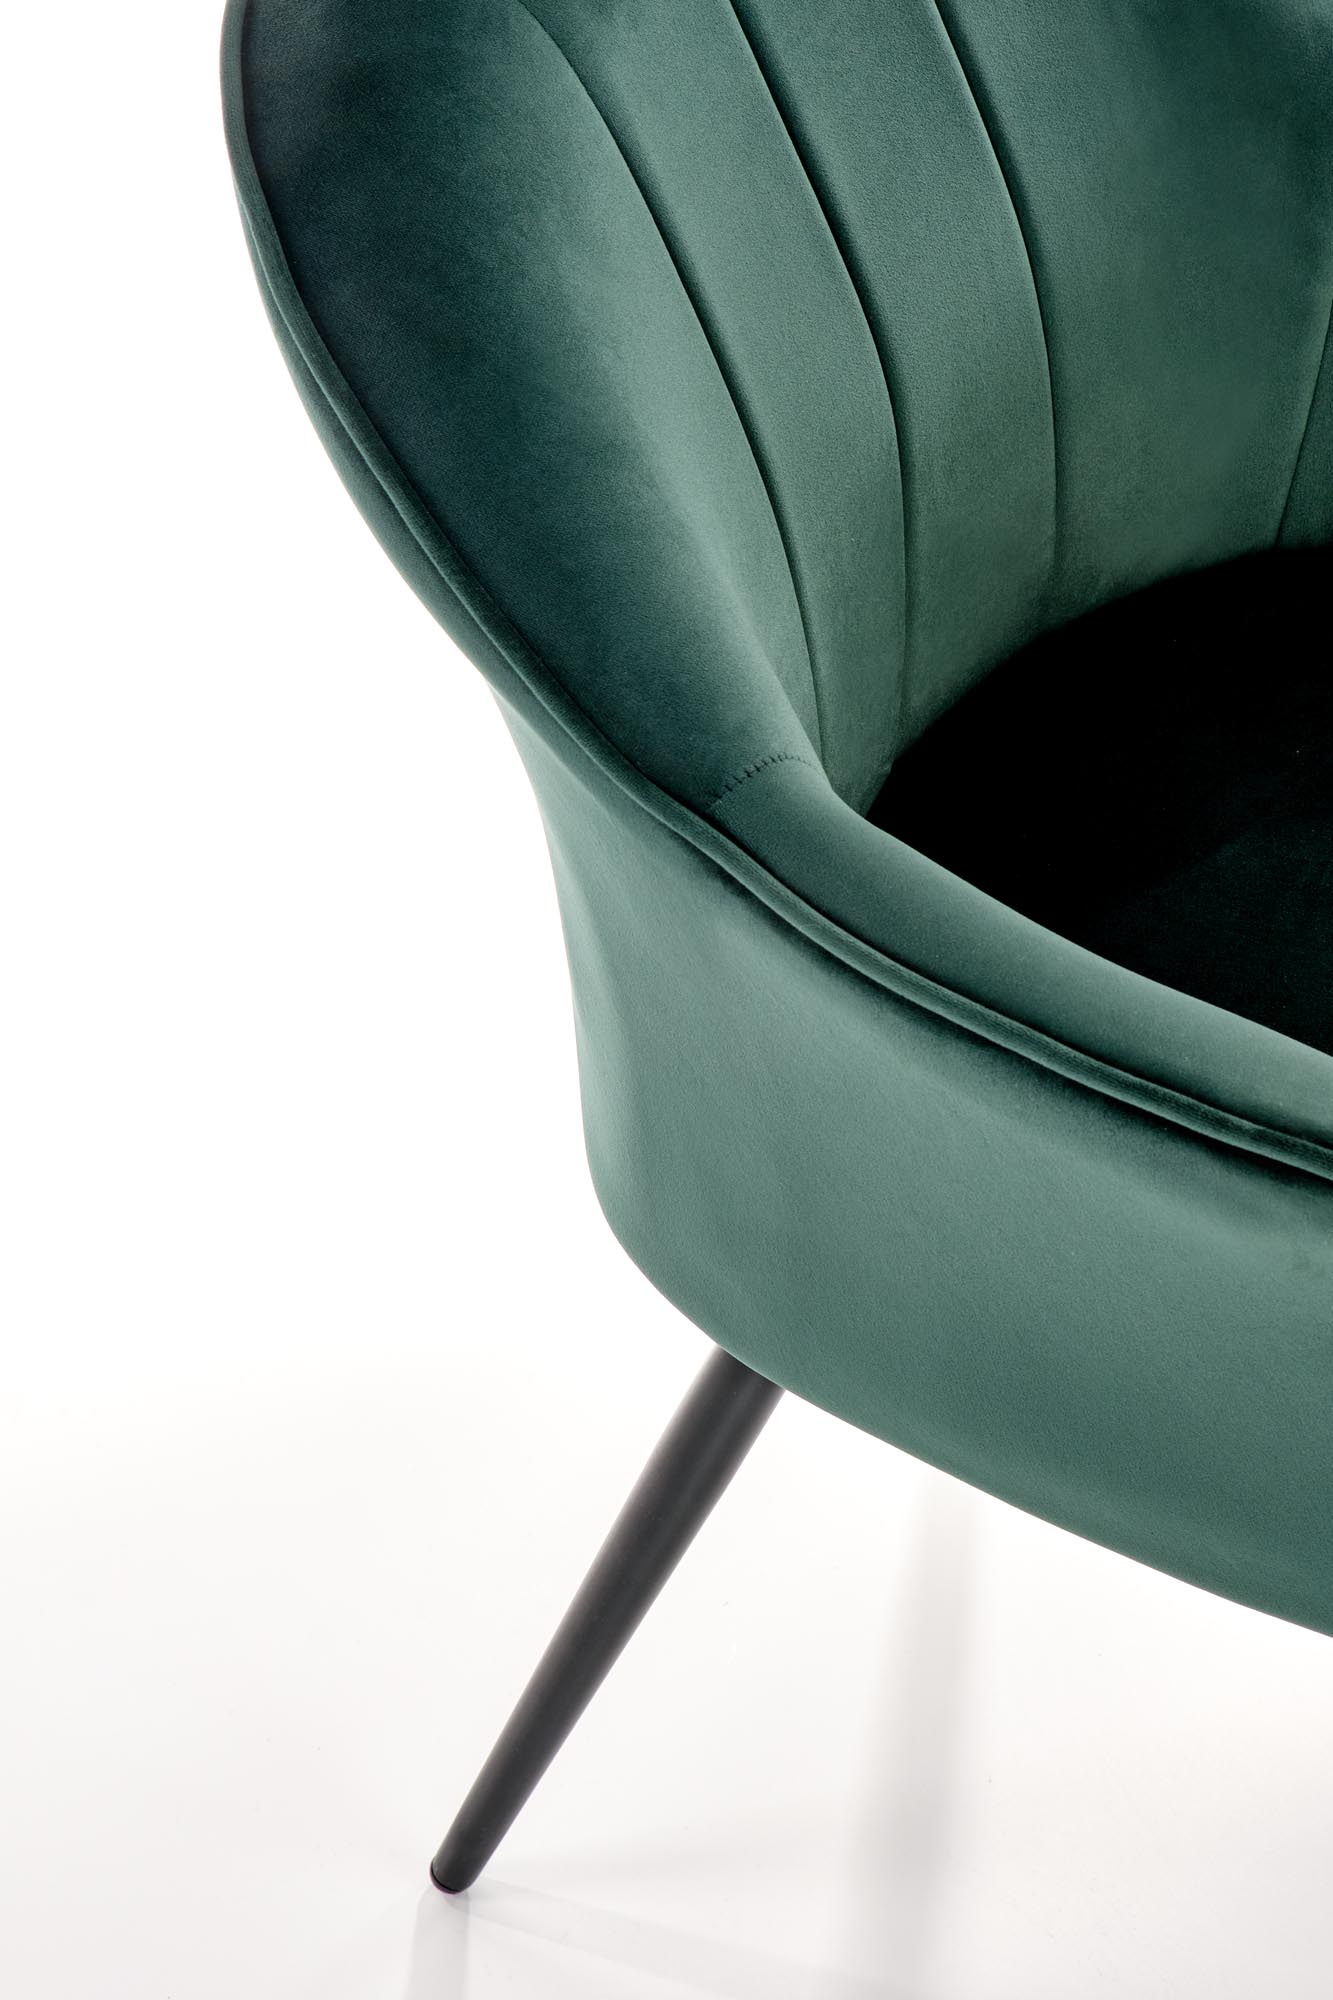 K468 krzesło ciemny zielony k468 krzesło ciemny zielony